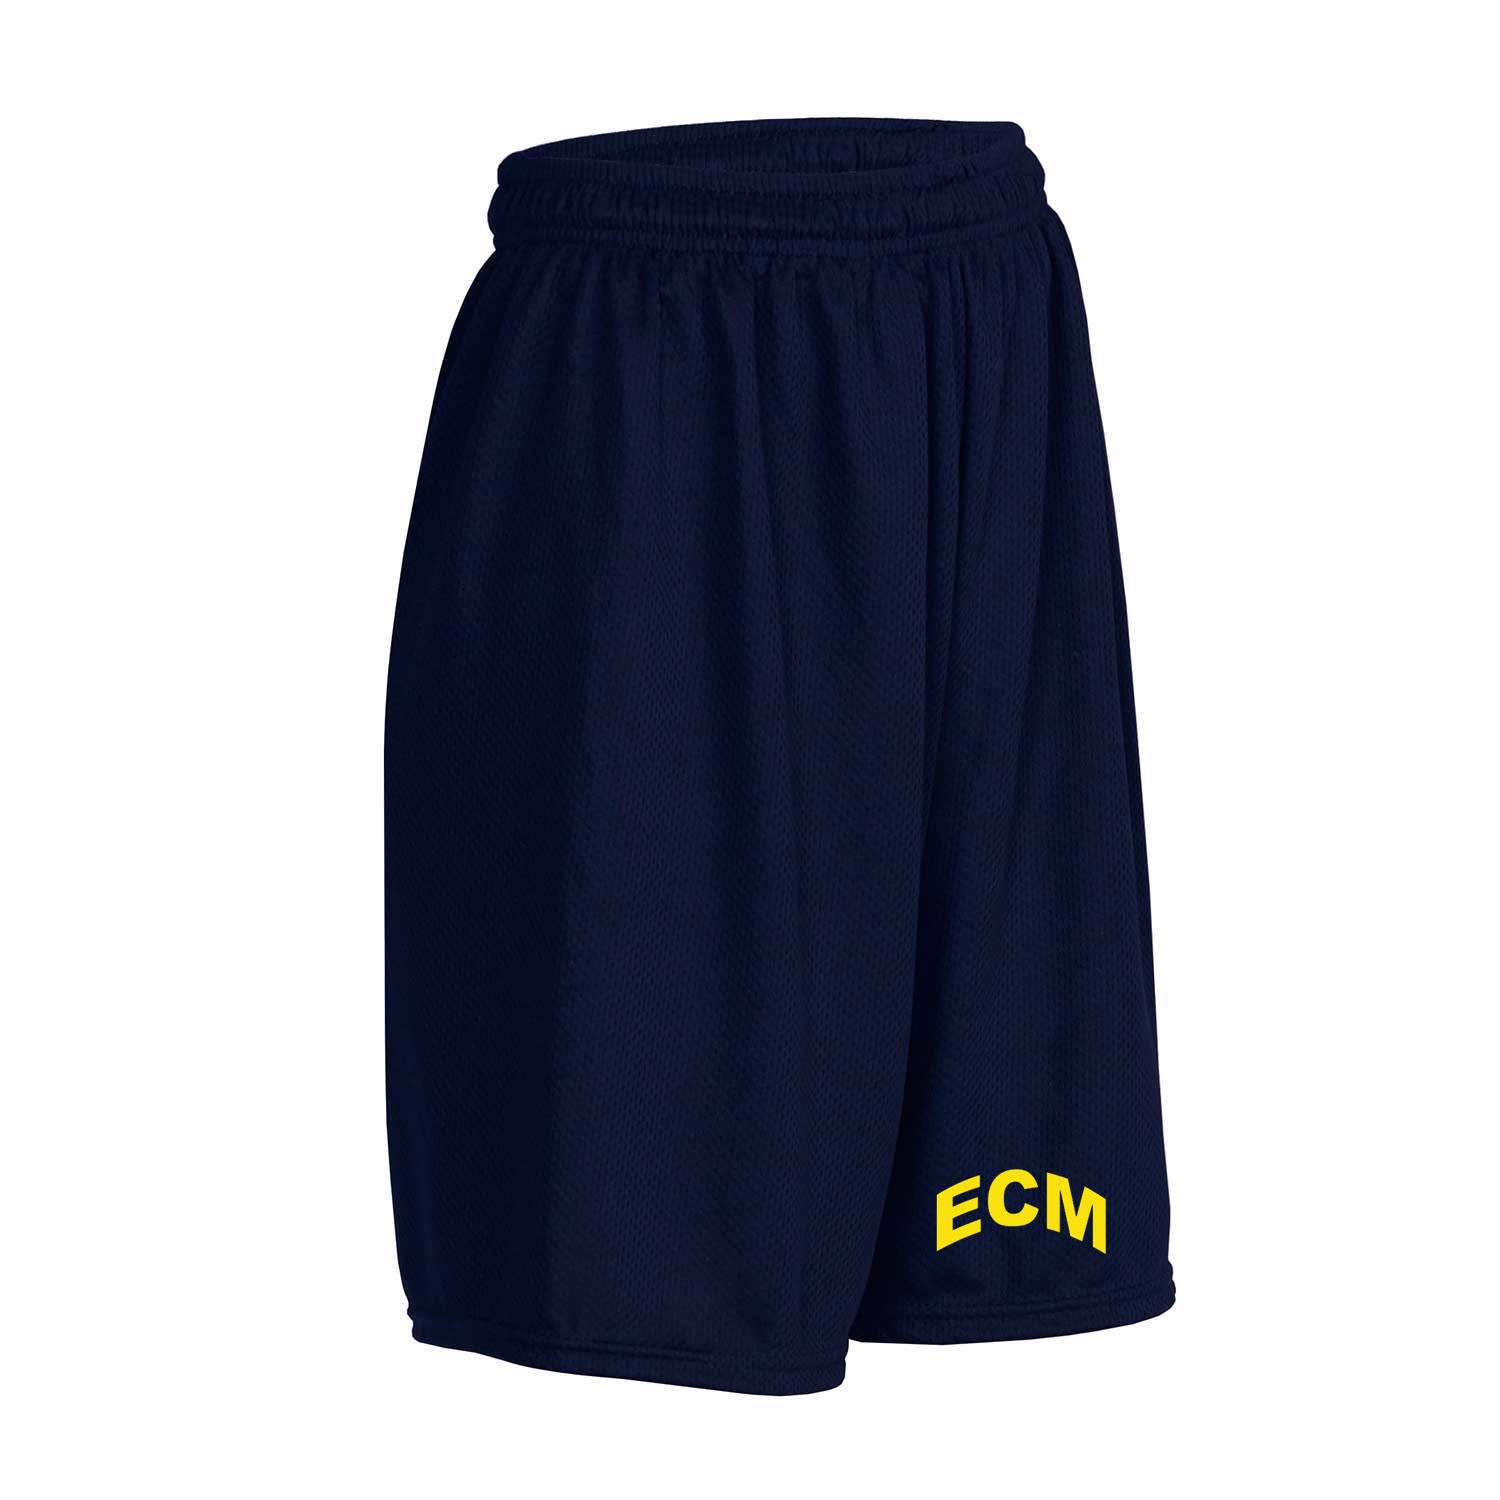 ECM Gym Shorts w/ School Logo